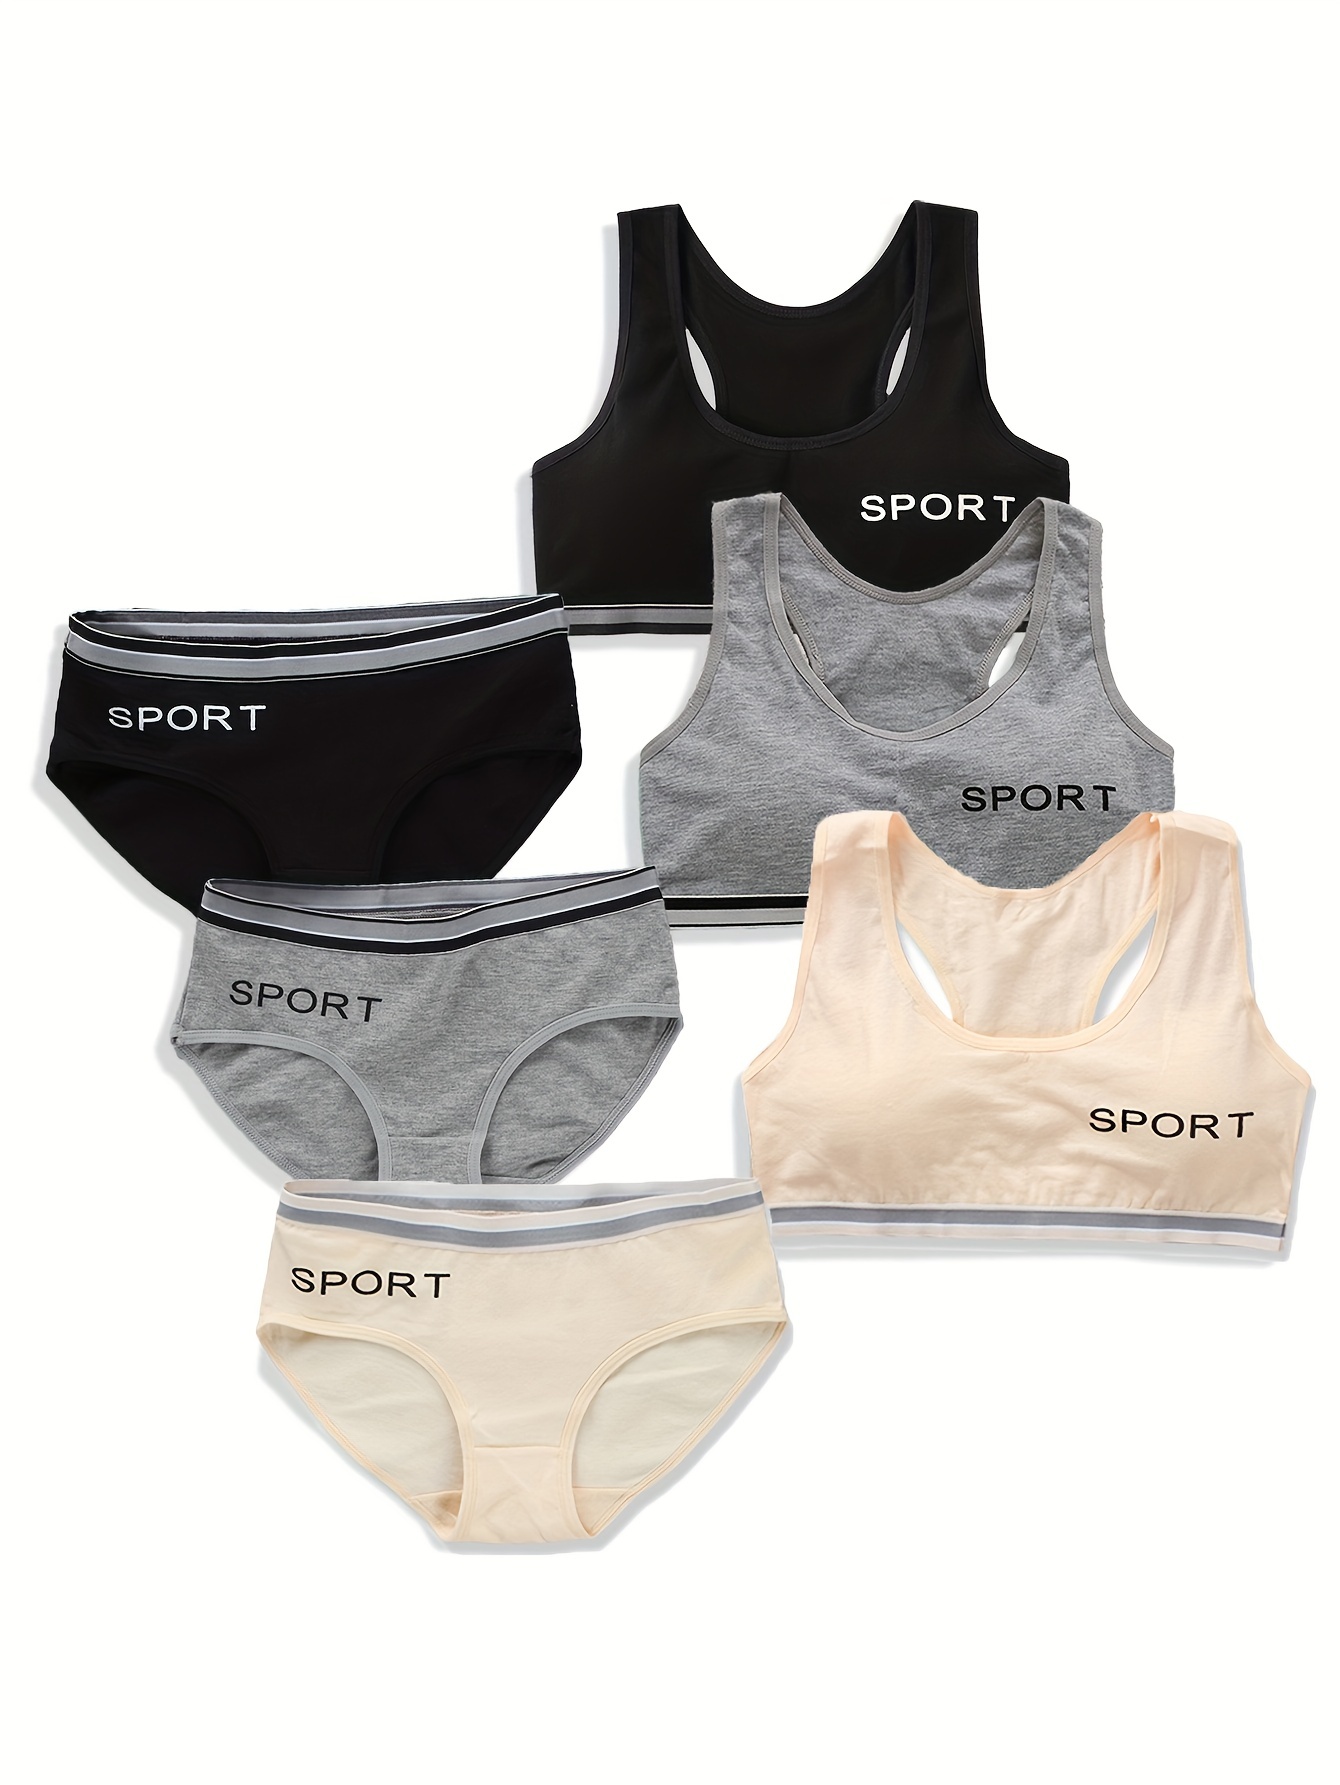 New girls development sport bra set student sports underwear